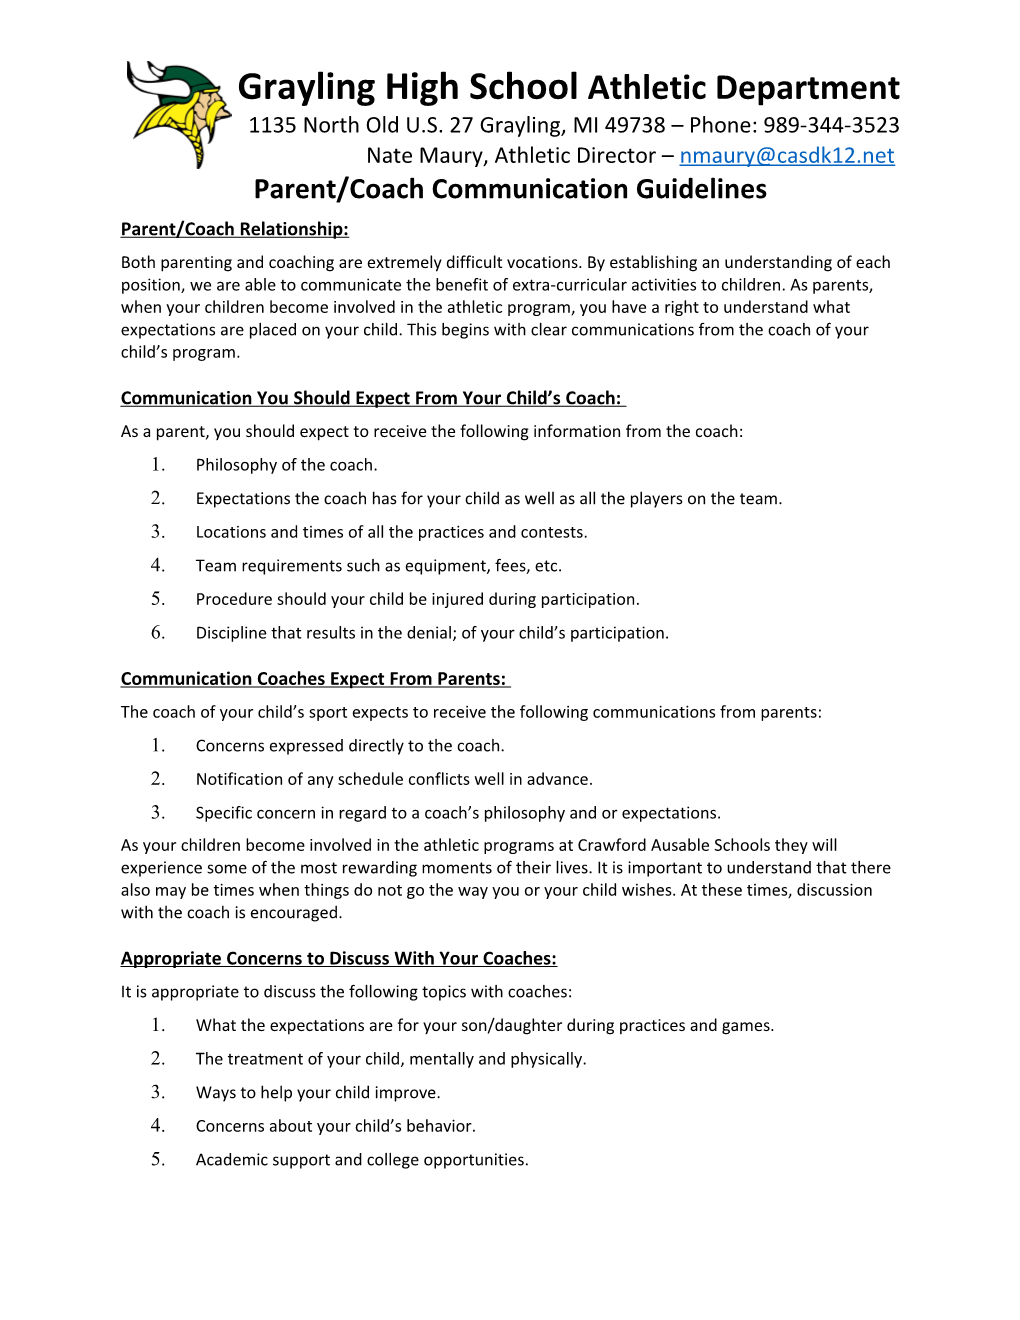 Parent/Coach Communication Guidelines